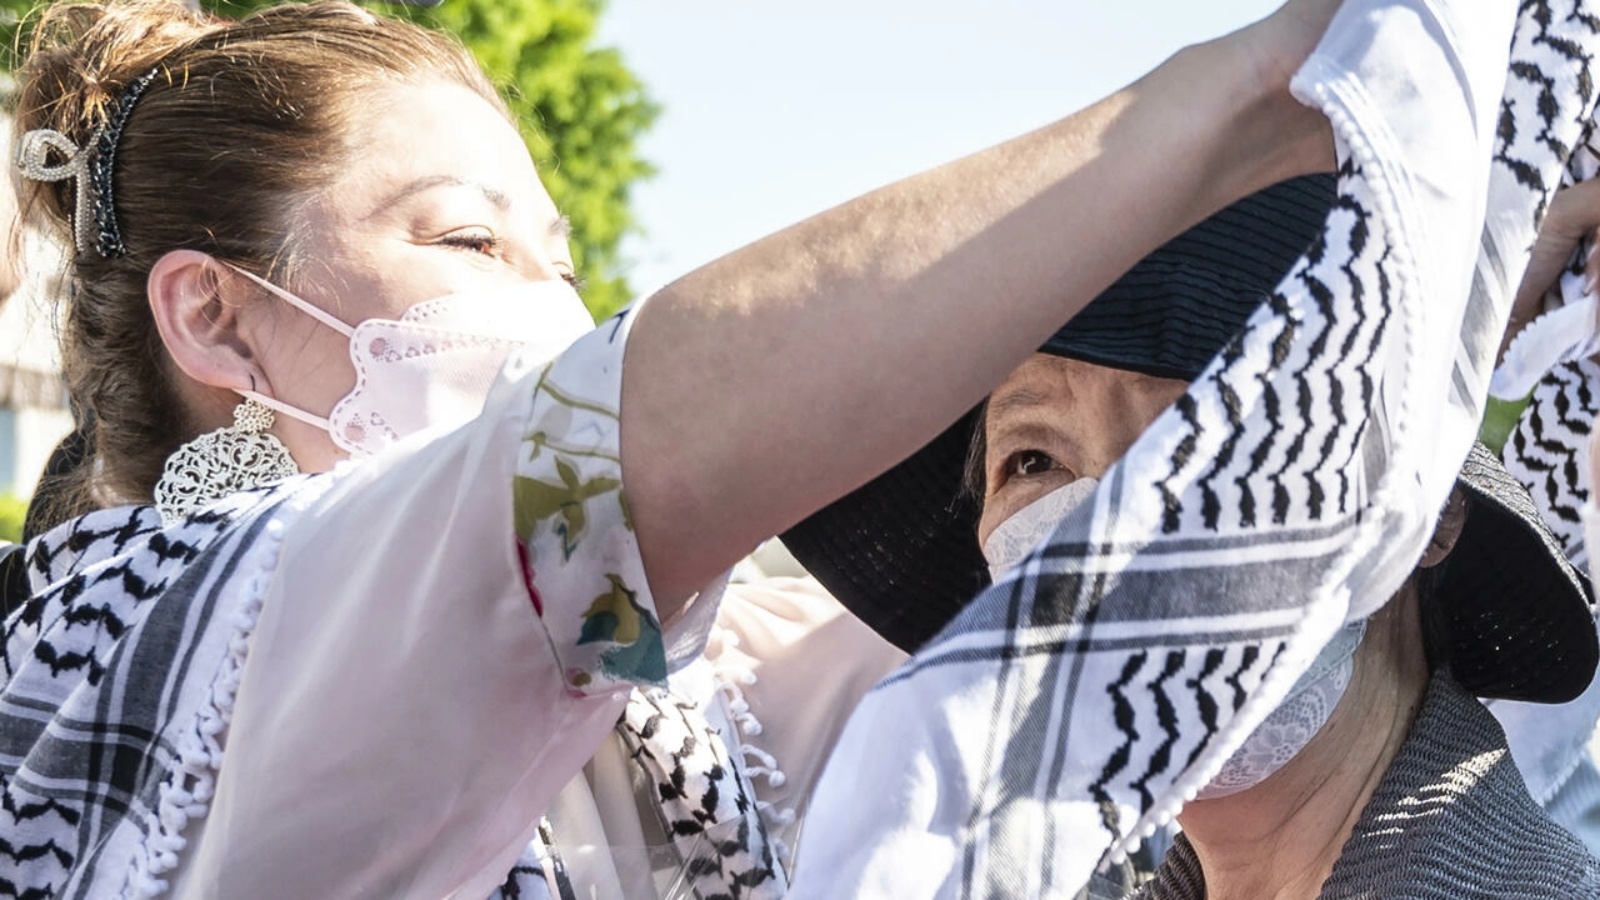 ماي تضع الكوفية الفلسطينية حول عنق والدتها شيغينوبو بعد اطلاق سراحها في طوكيو